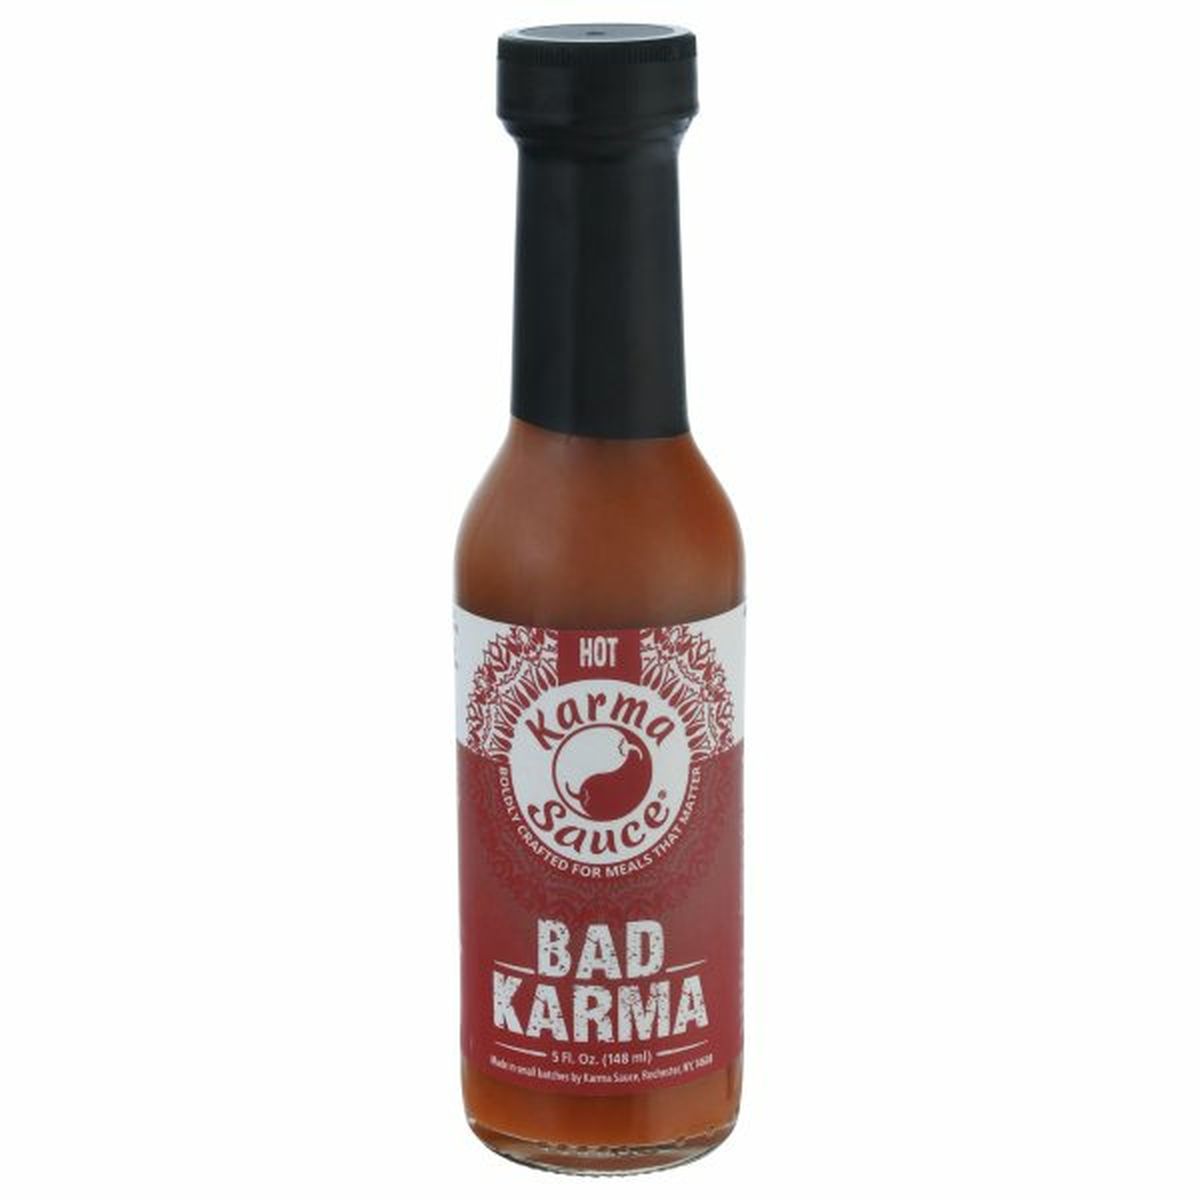 Calories in Karma Sauce Sauce, Bad Karma, Hot